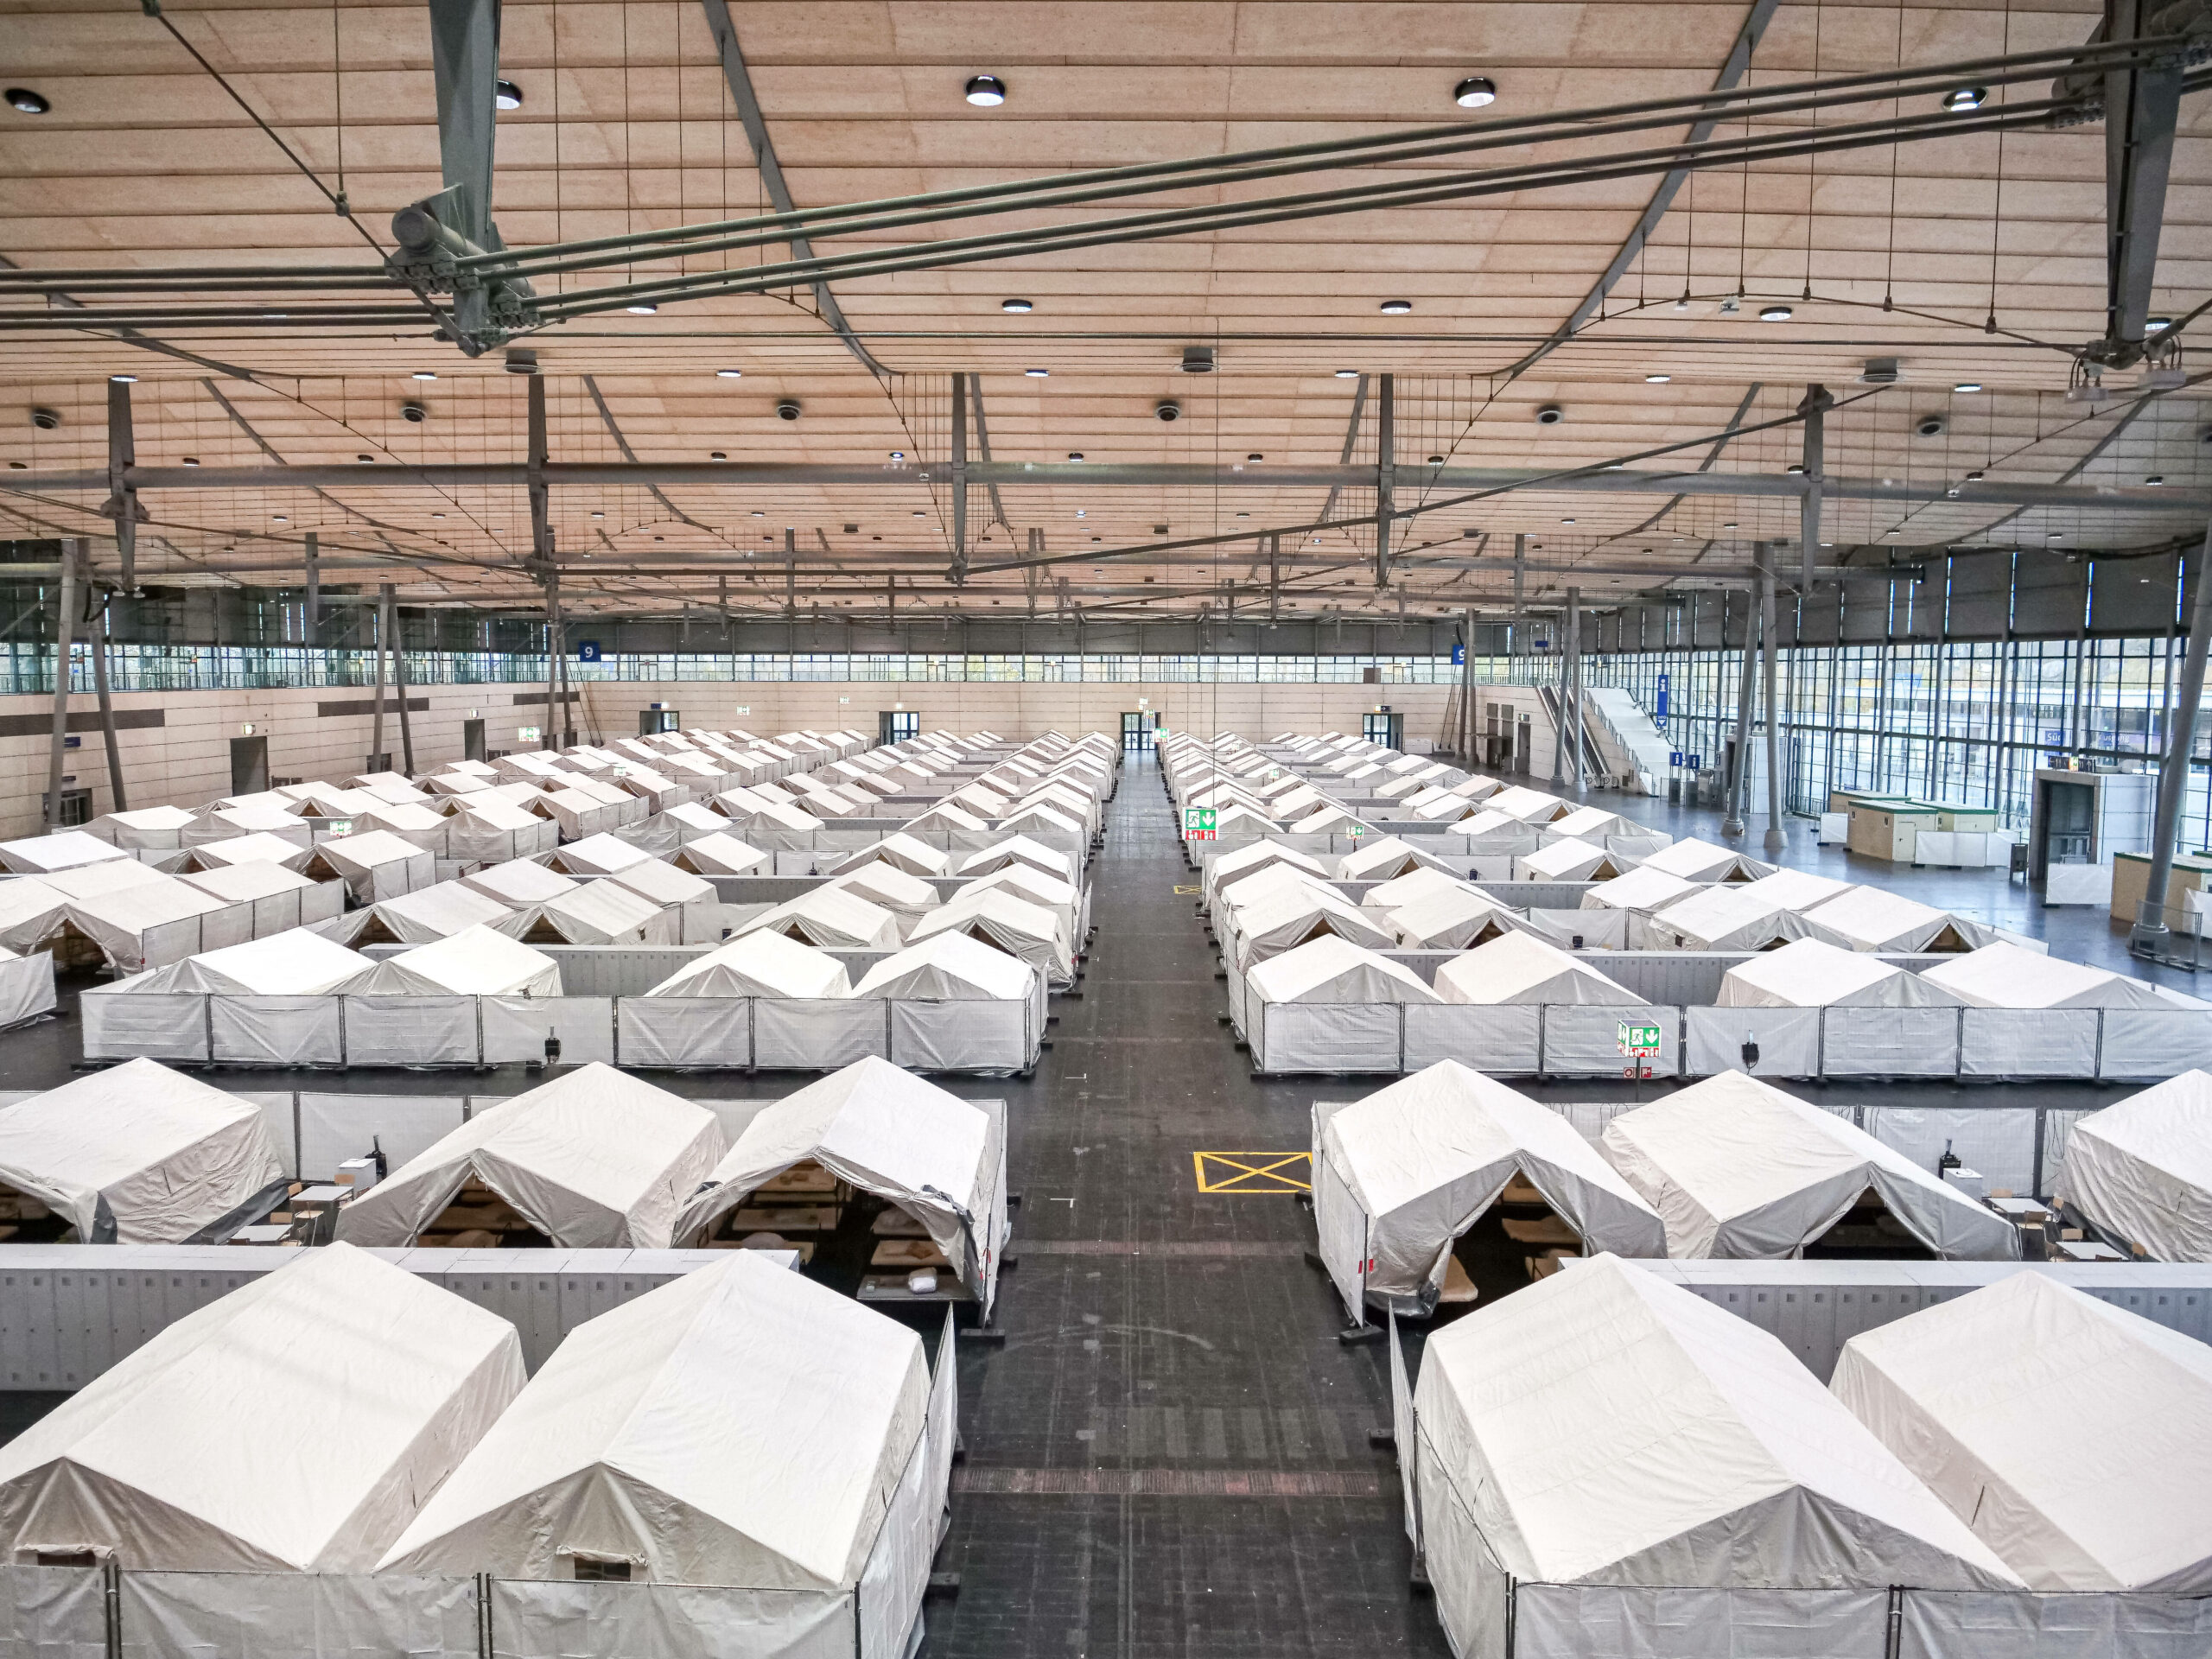 Zelte stehen in einer großen Flüchtlingsunterkunft auf dem Messegelände Hannover. (Archivbild)